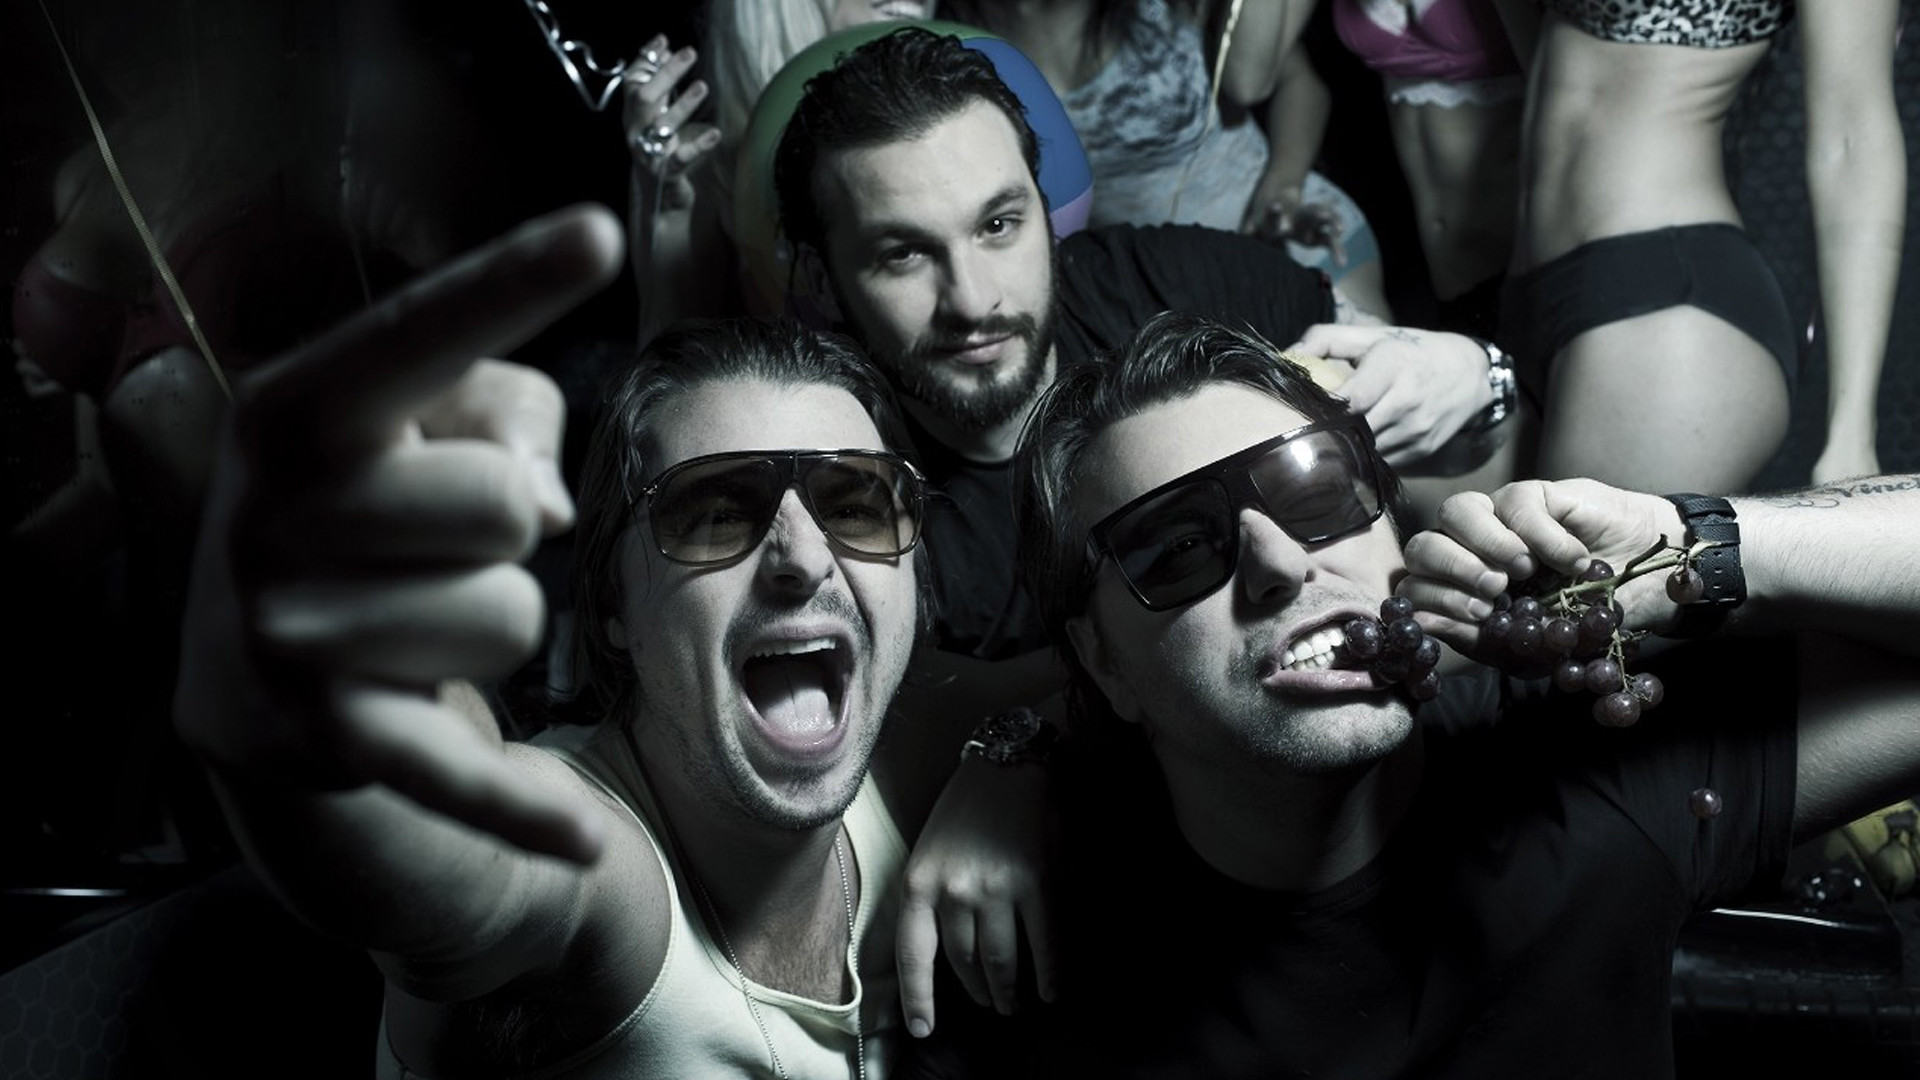 Swedish House Mafia HD Wallpaper | Background Image ...